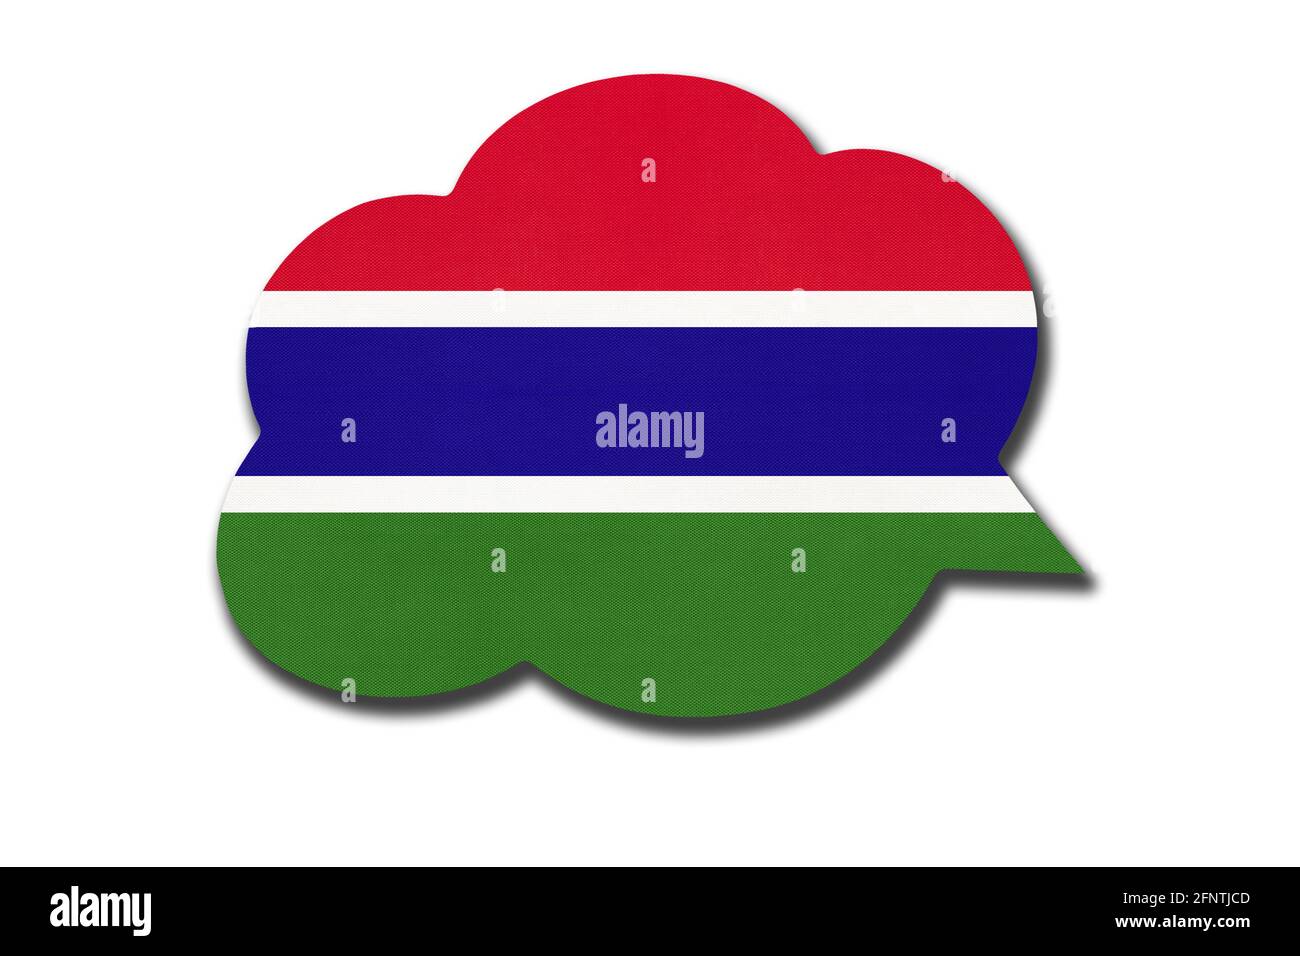 Bolla vocale 3d con bandiera nazionale gambiana isolata su sfondo bianco. Parla e impara la lingua. Simbolo del paese della Gambia. Comunicazione mondiale Foto Stock